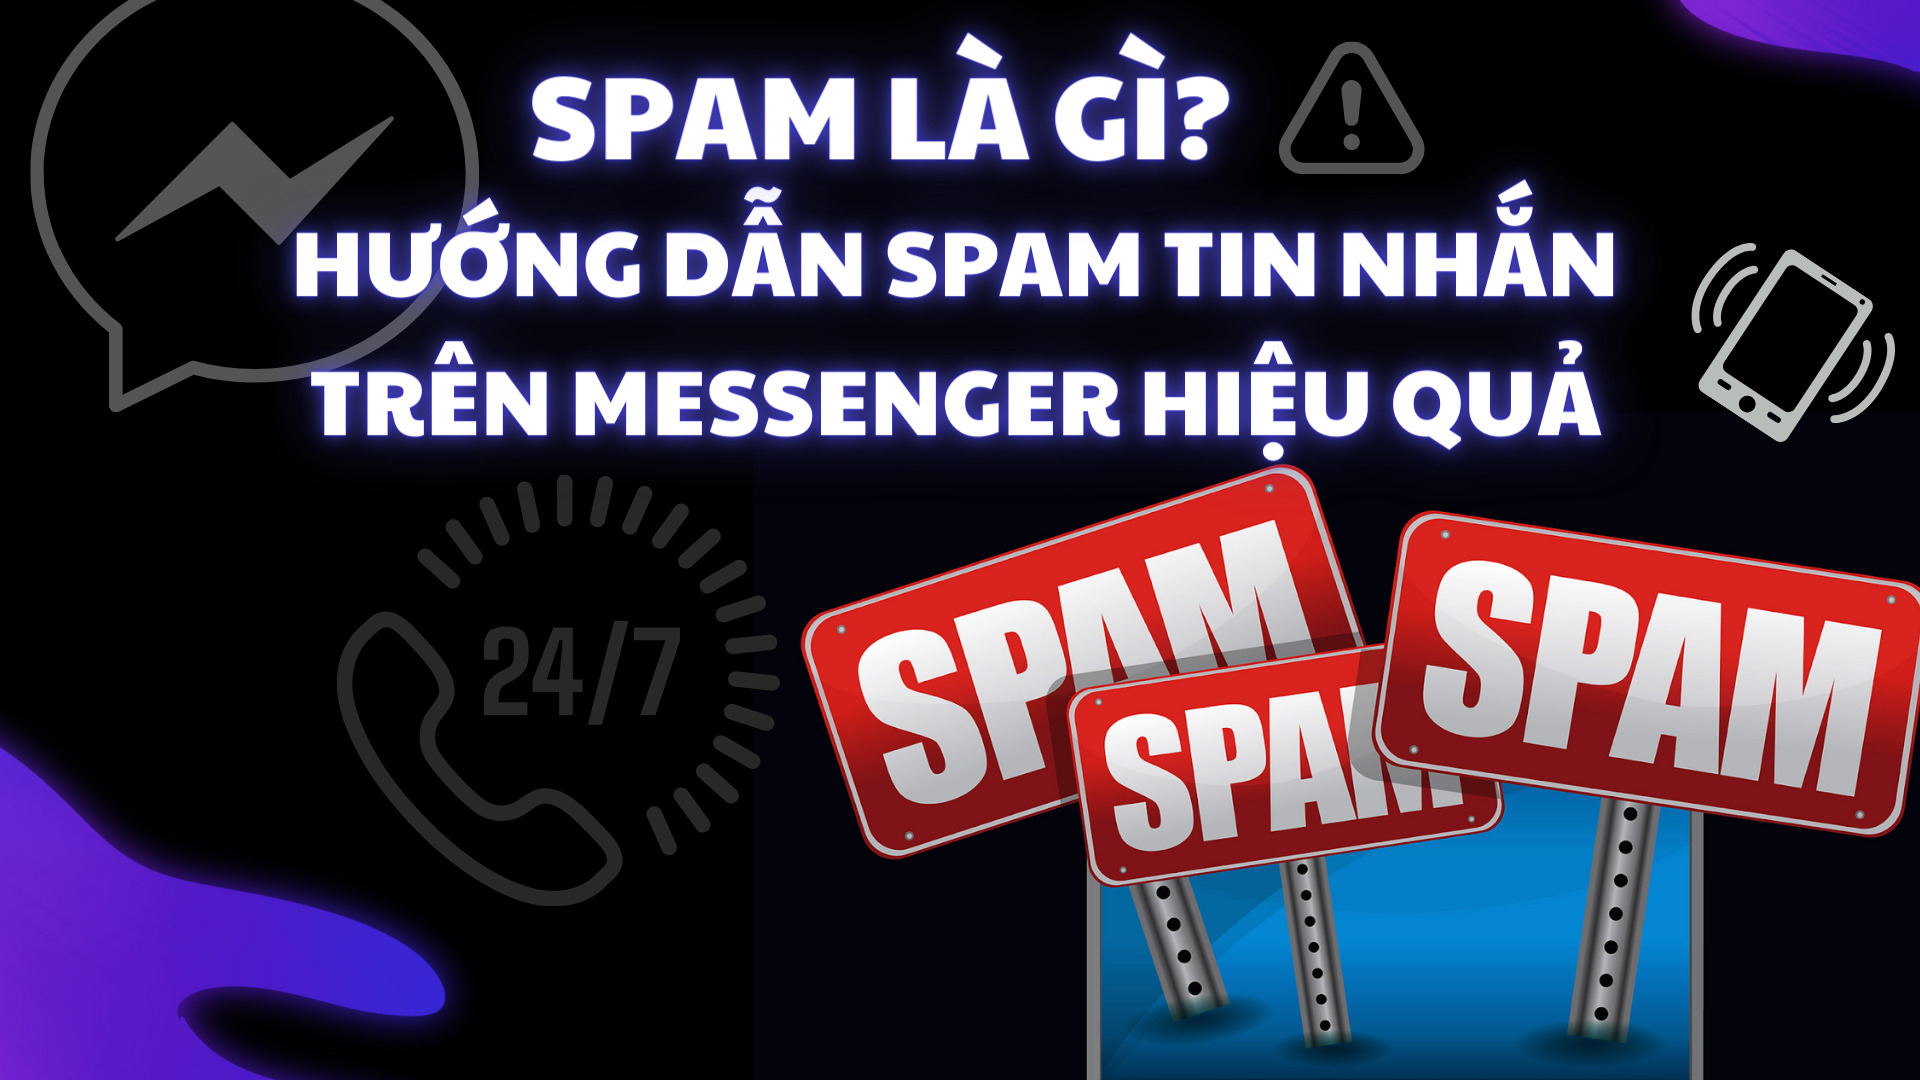 Spam là gì? Hướng dẫn spam tin nhắn trên Messenger hiệu quả